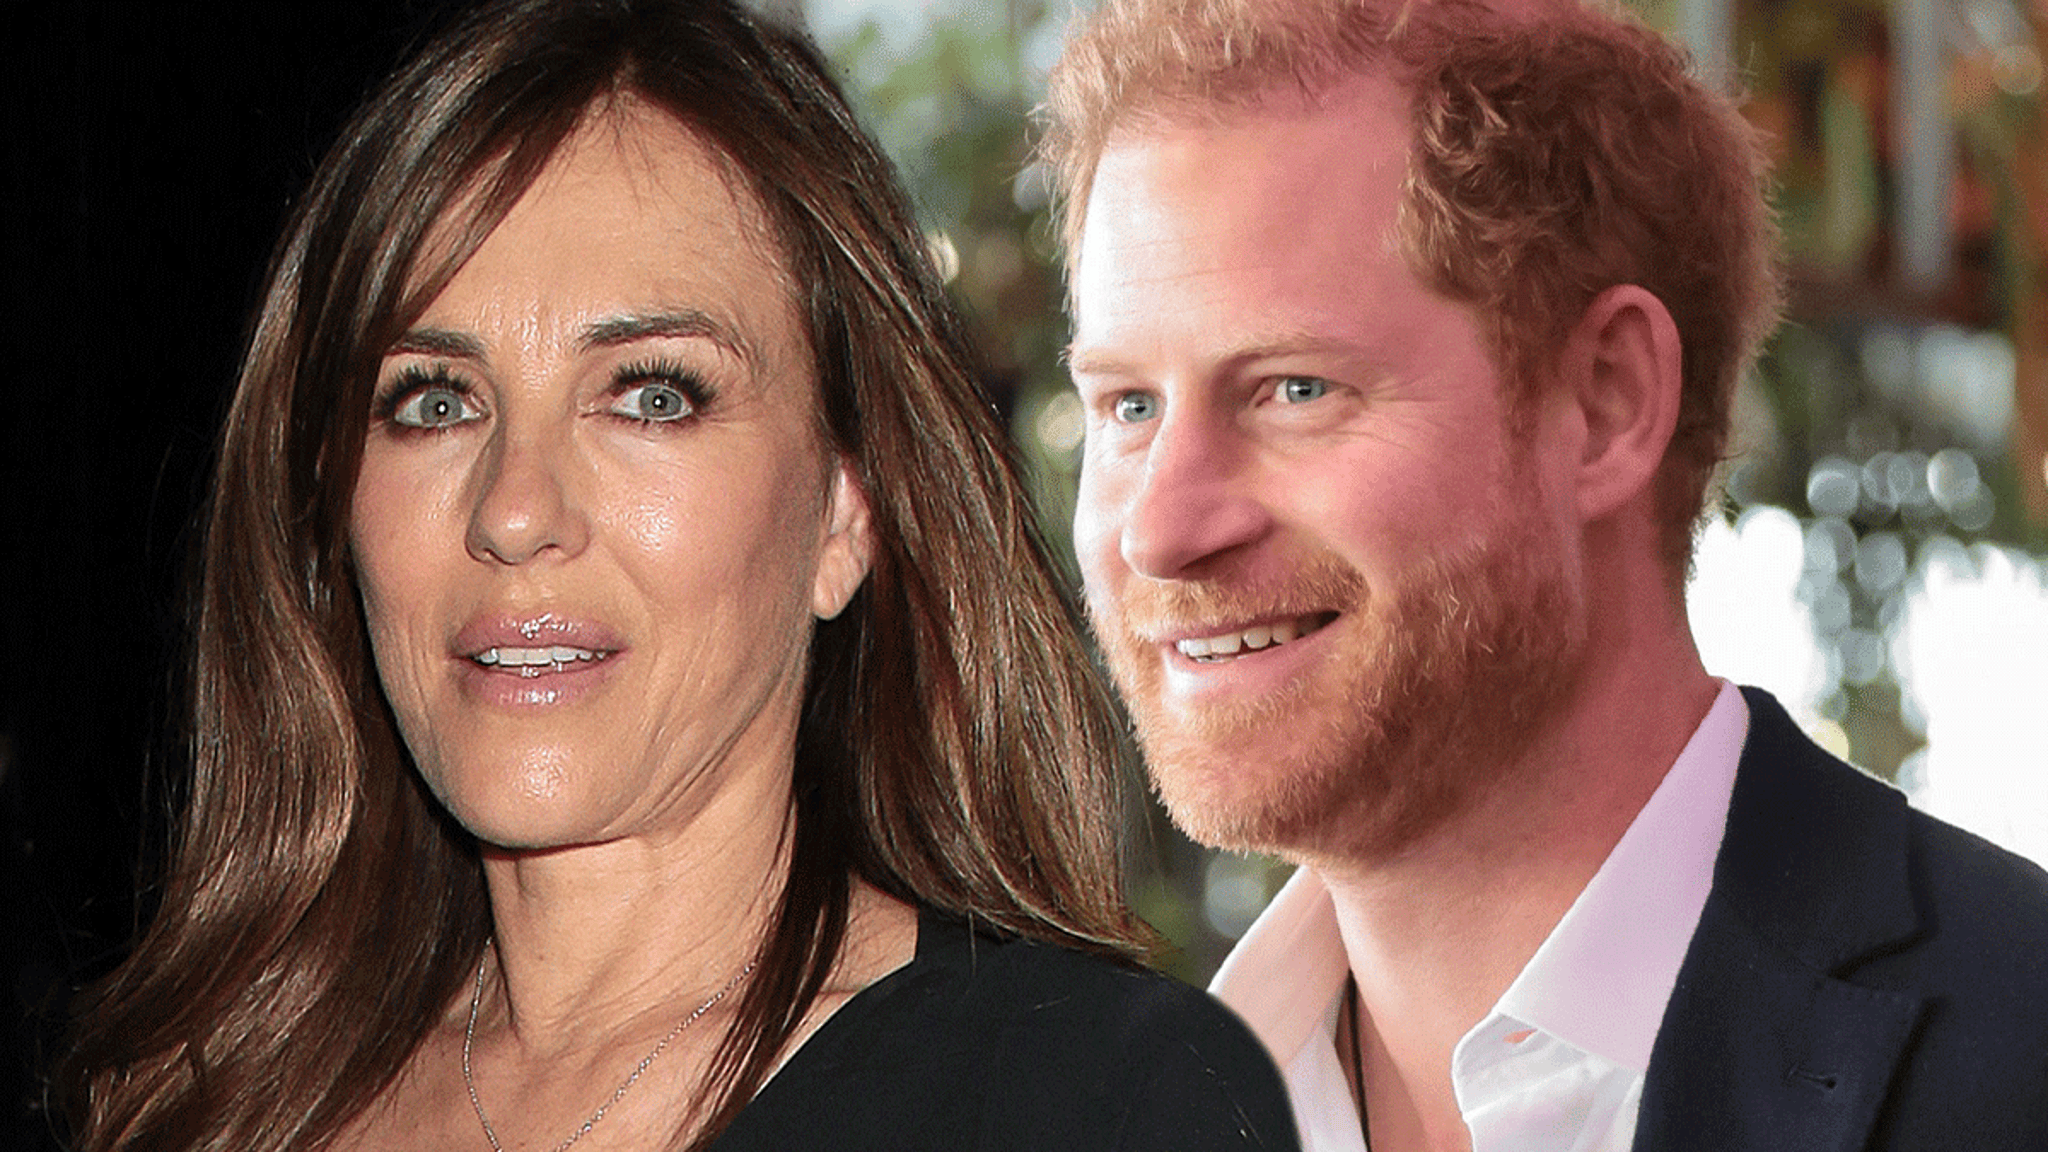 Elizabeth Hurley denies taking Prince Harry's virginity amid memory rumor